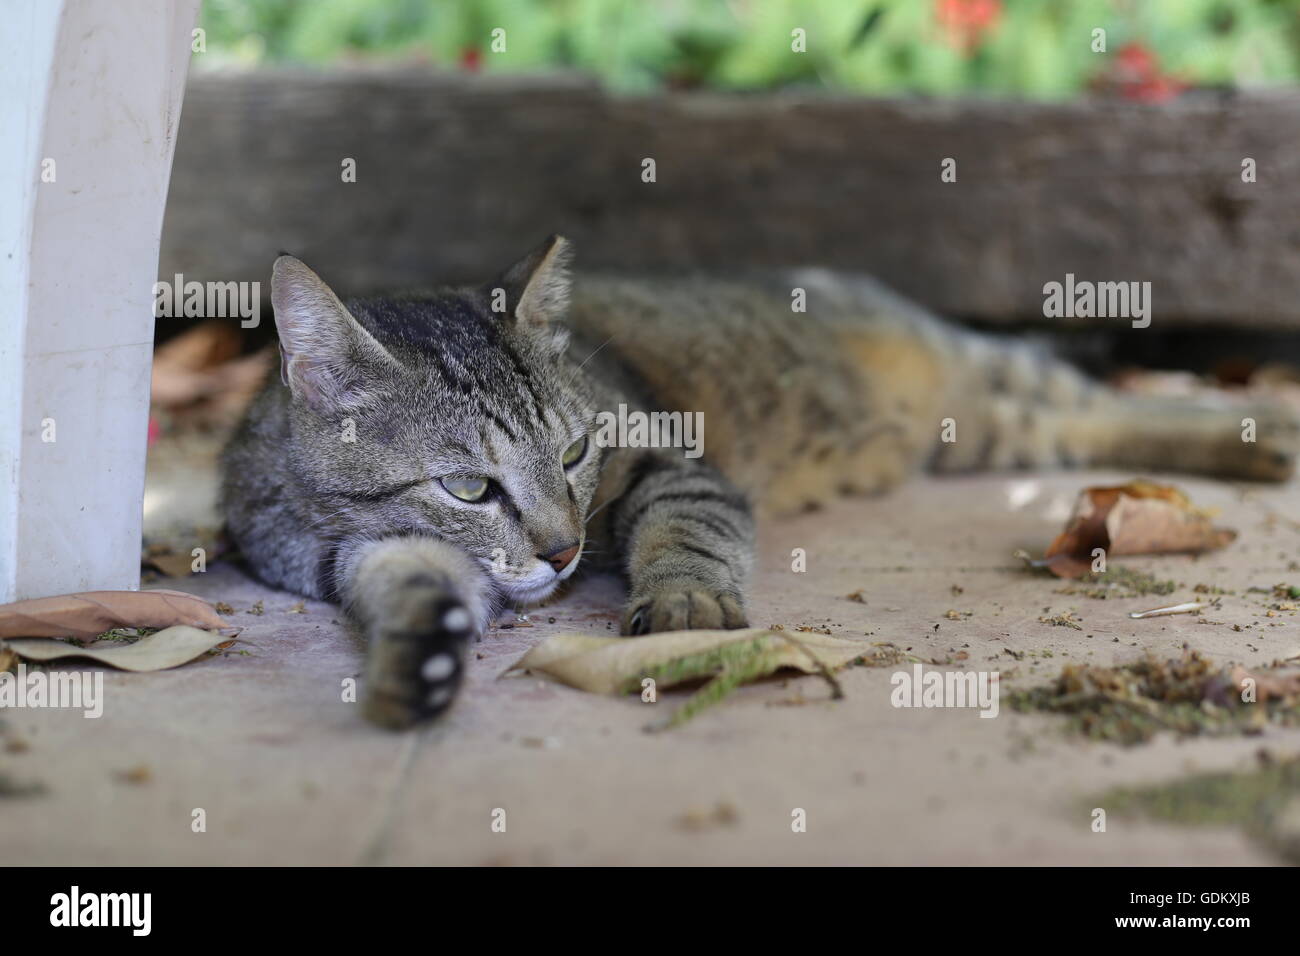 Aware Cat, Cat Lay Alert. Street cat lying alert on the floor in the garden. Stock Photo